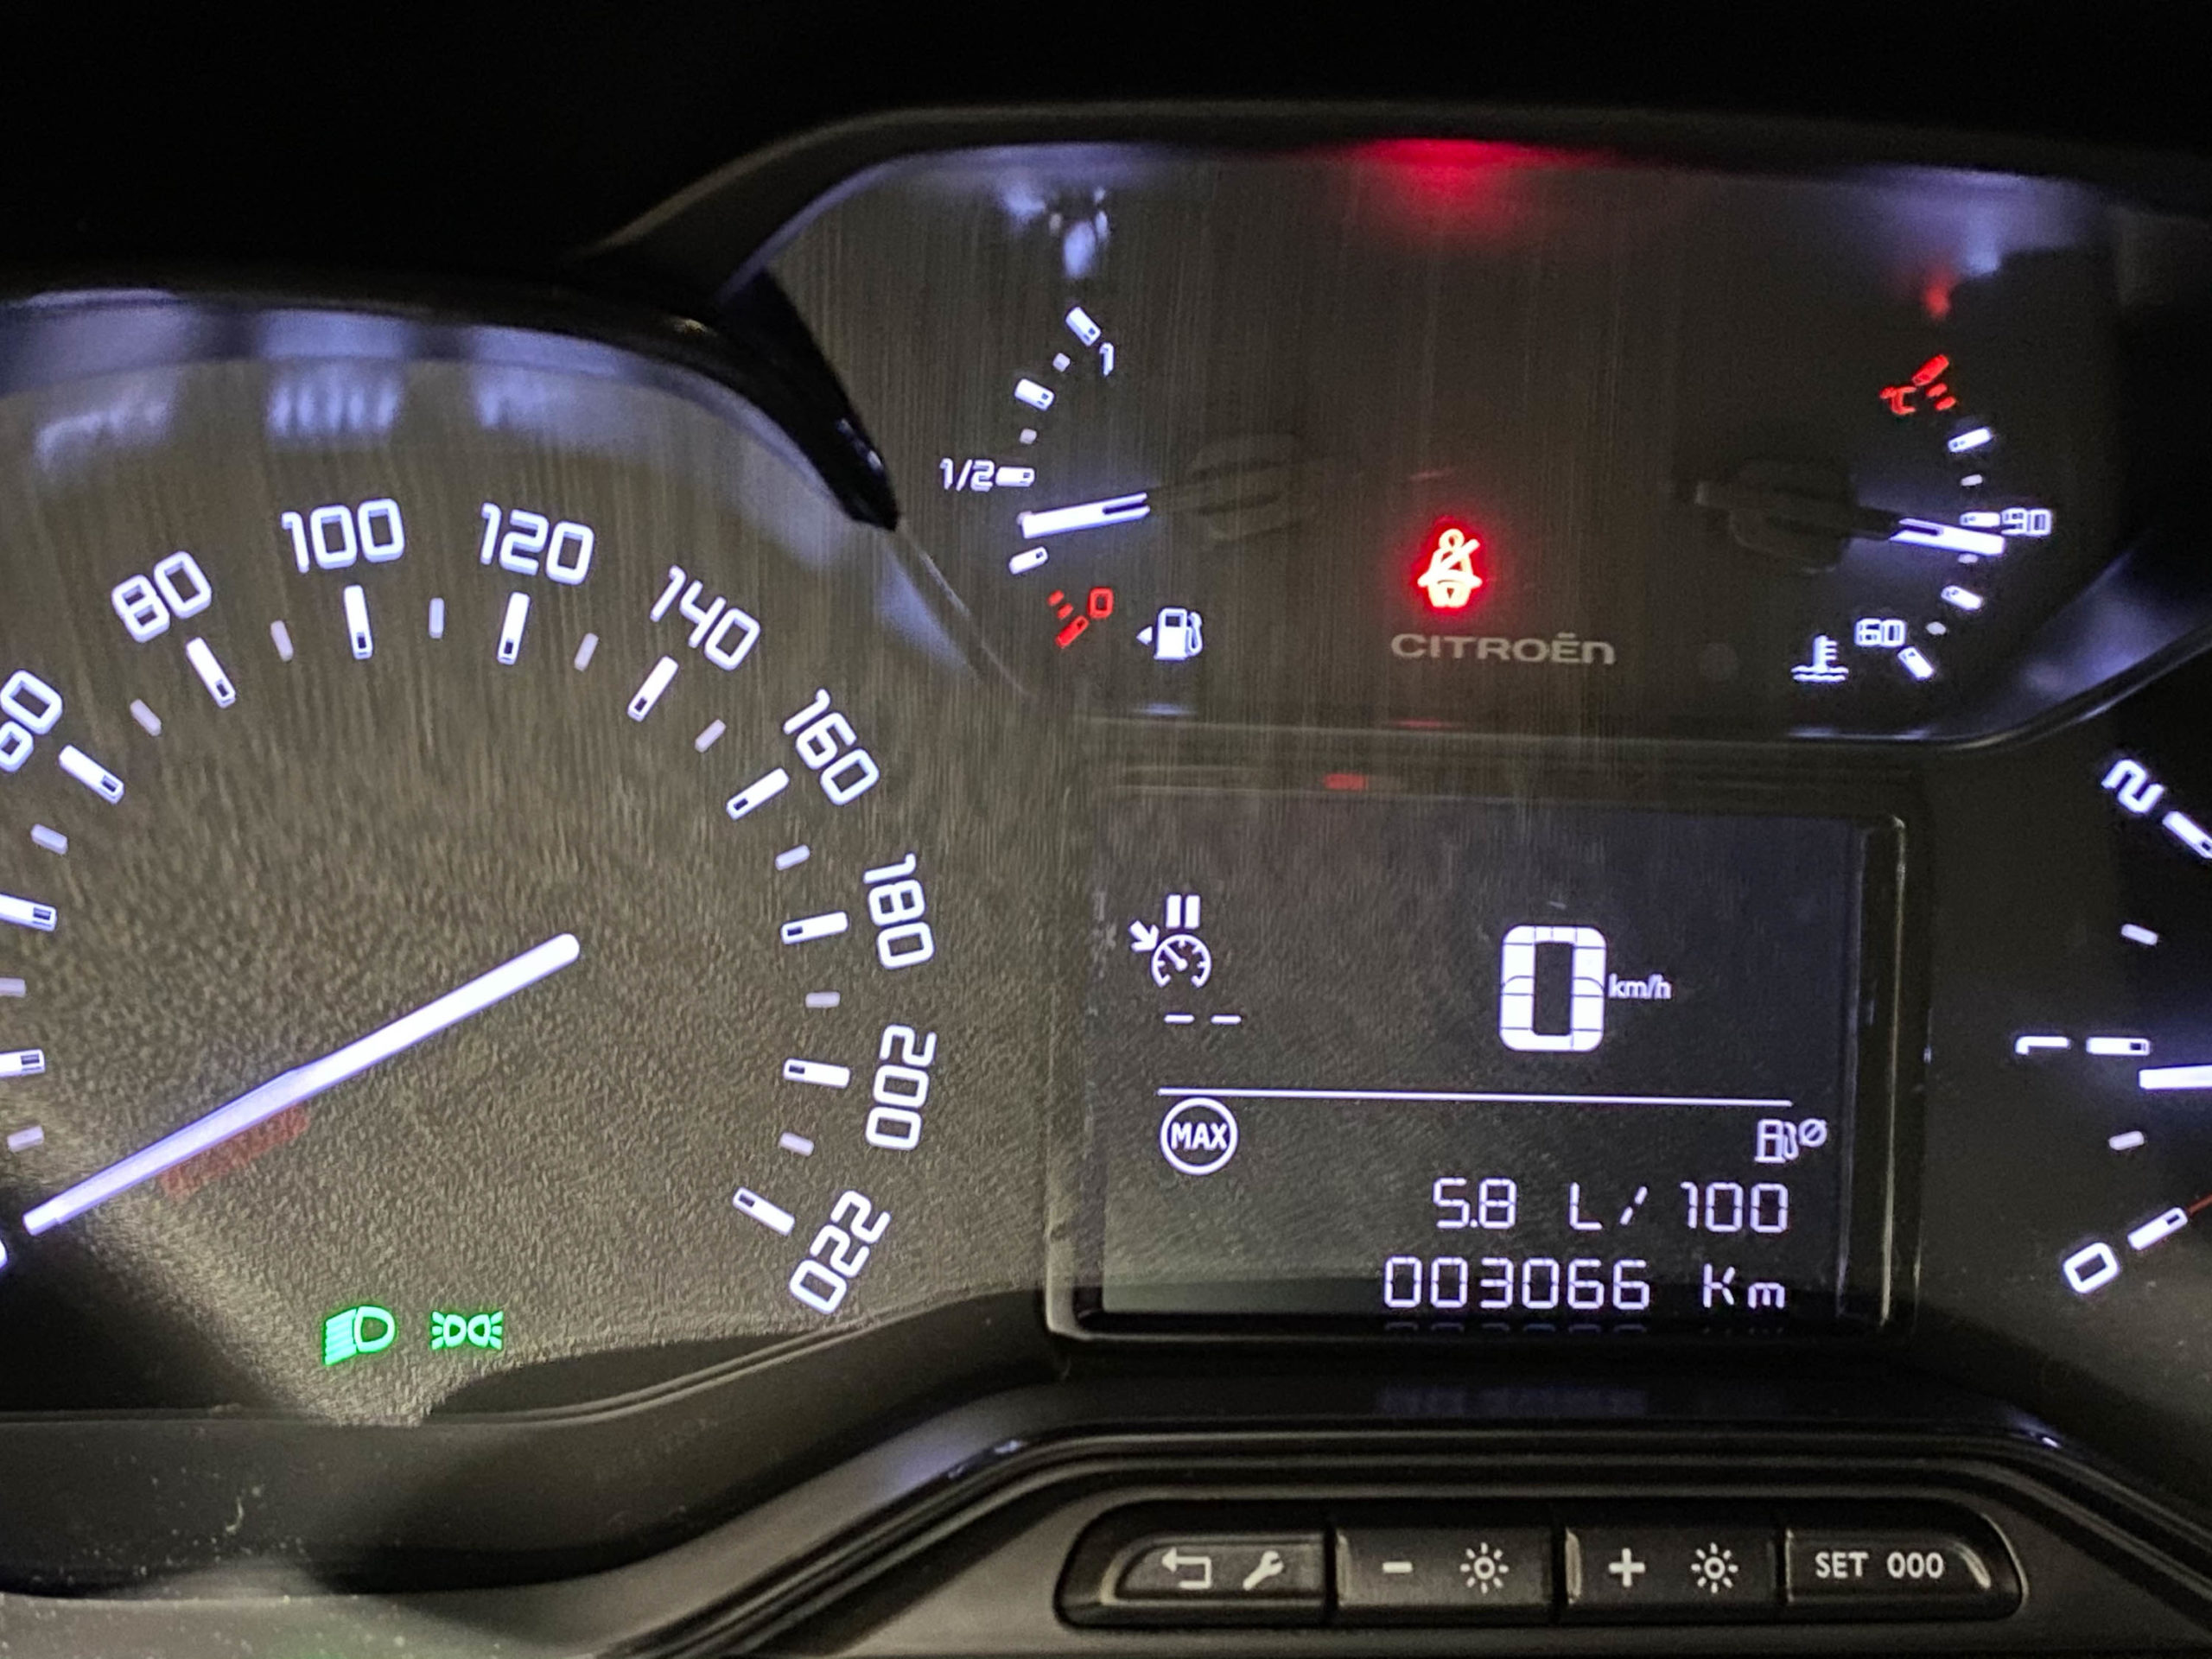 Ile Pali Nowy Citroën C3 1.2 110 Km Na Autostradzie? Zaskakujący Wynik Testu – Francuskie.pl – Dziennik Motoryzacyjny